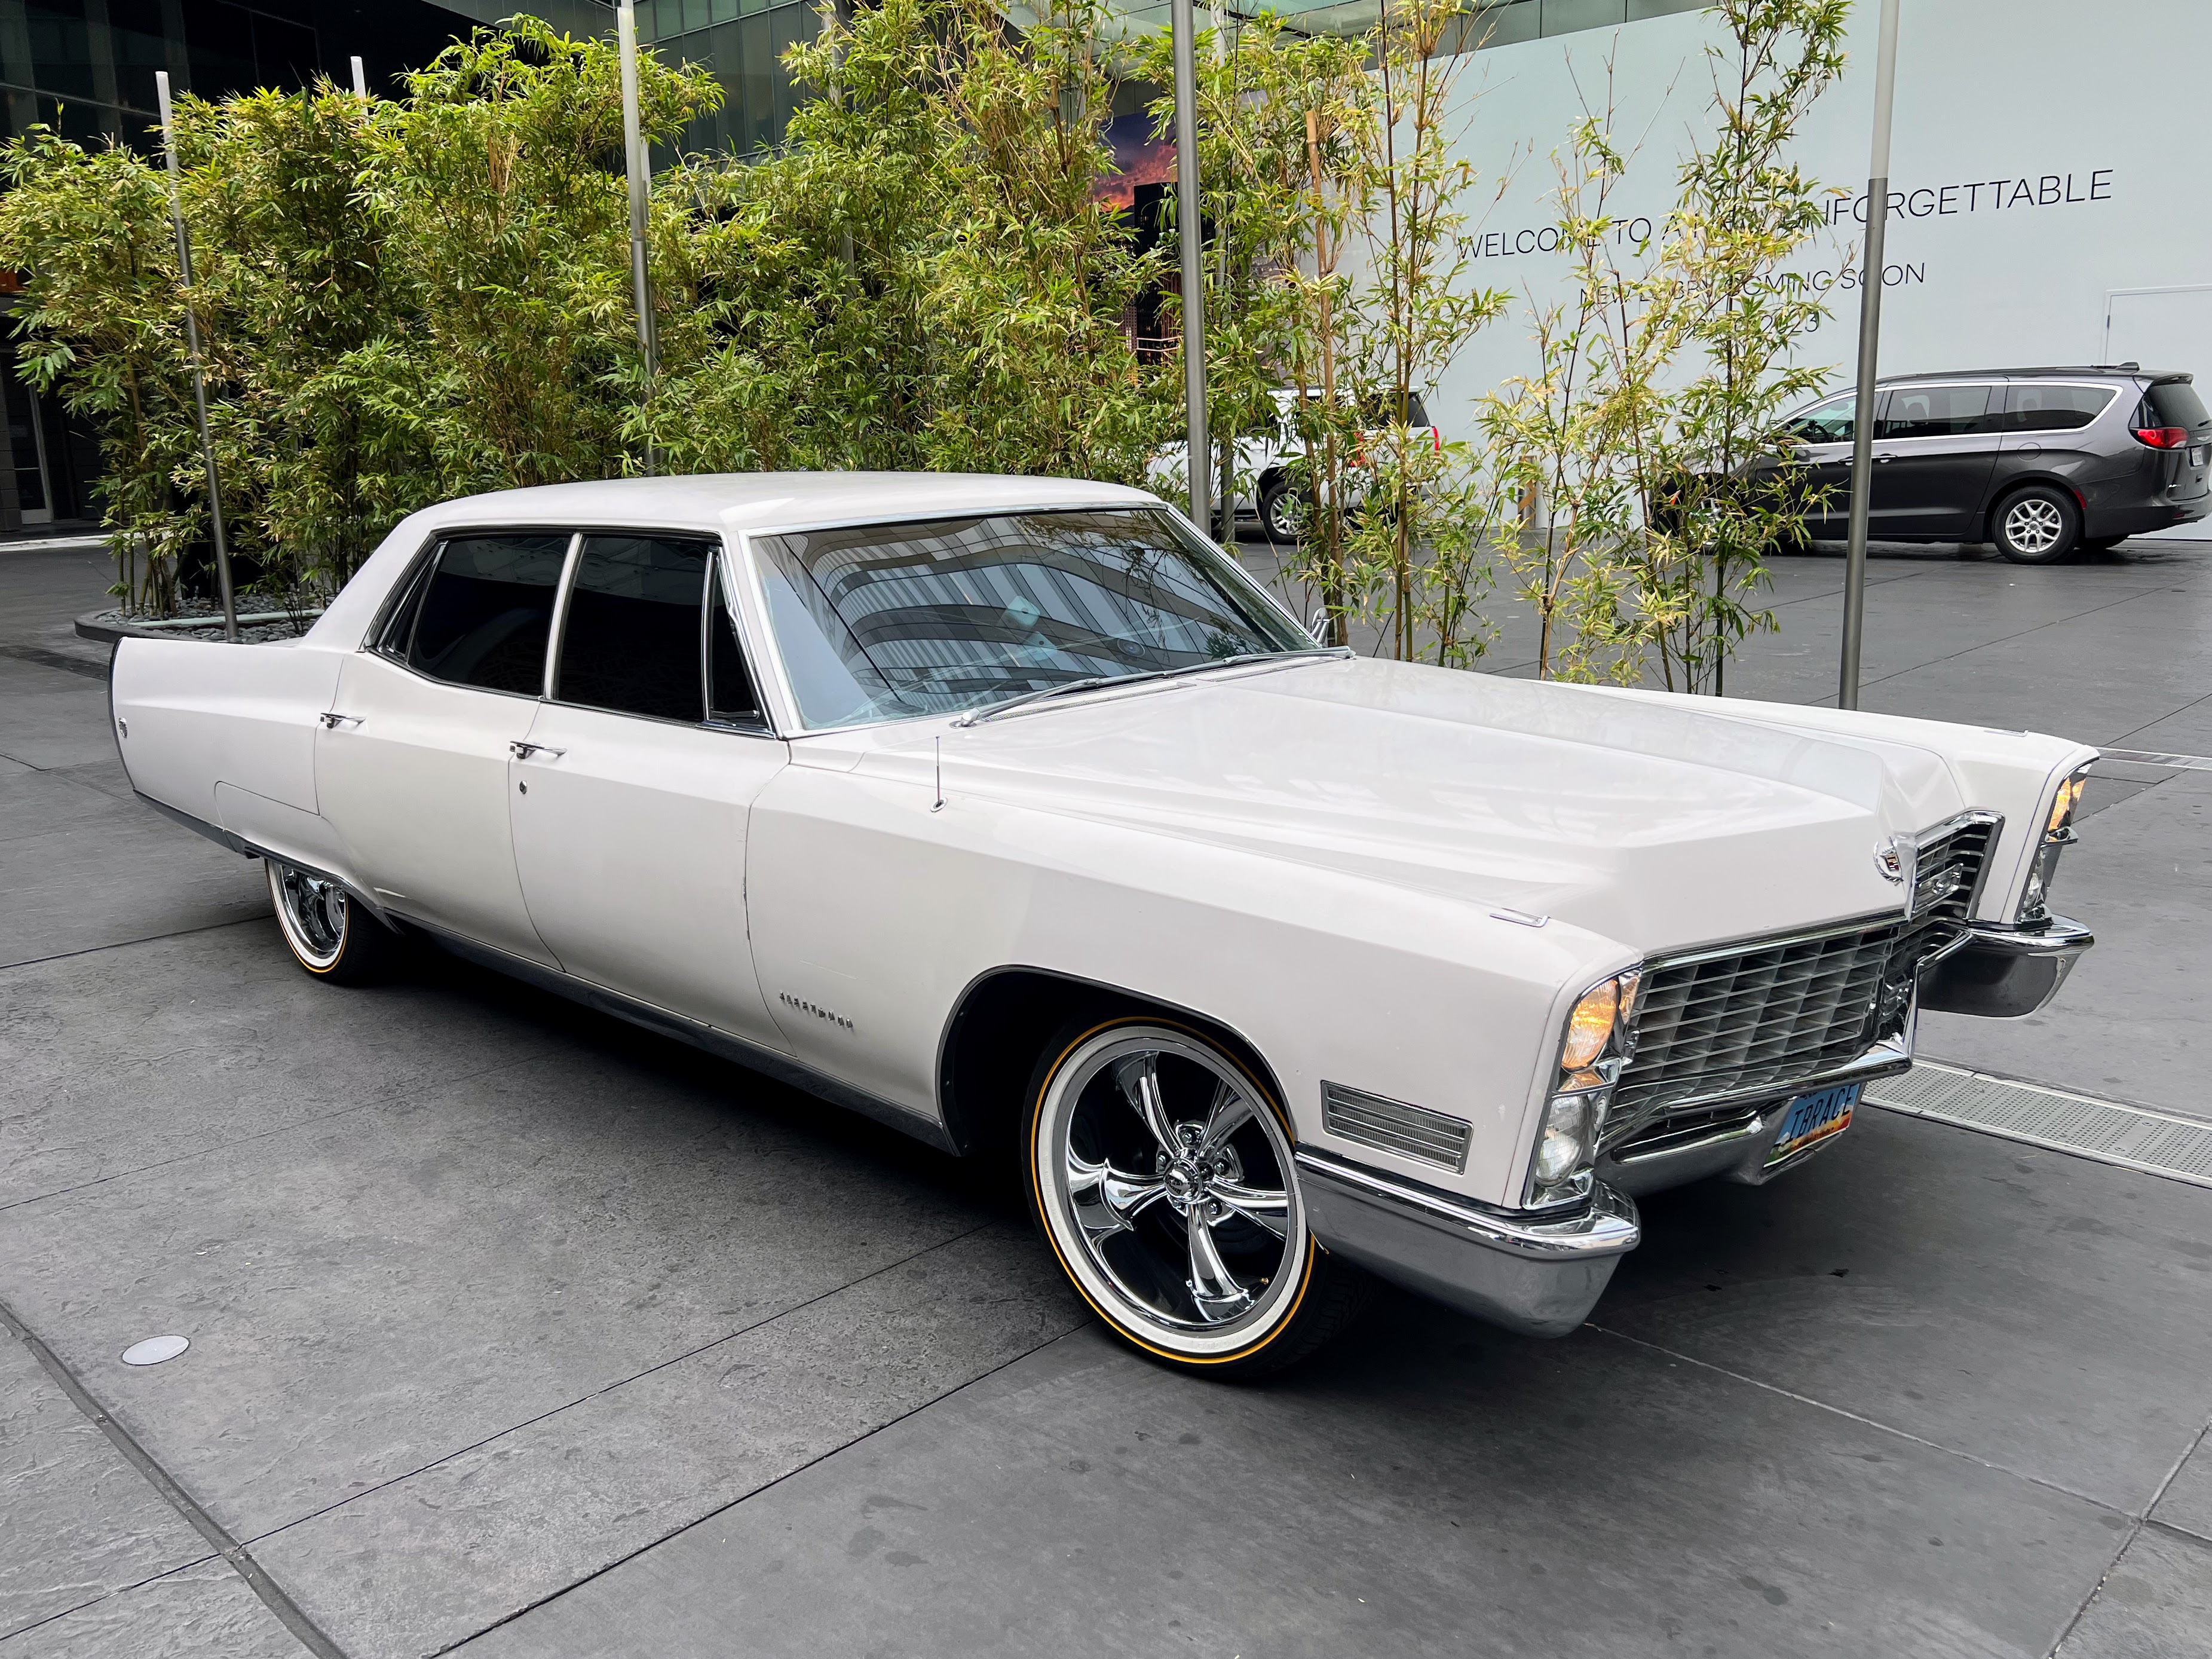 Ein 1976er Cadillac Fleetwood parkte vor einem Hotel.